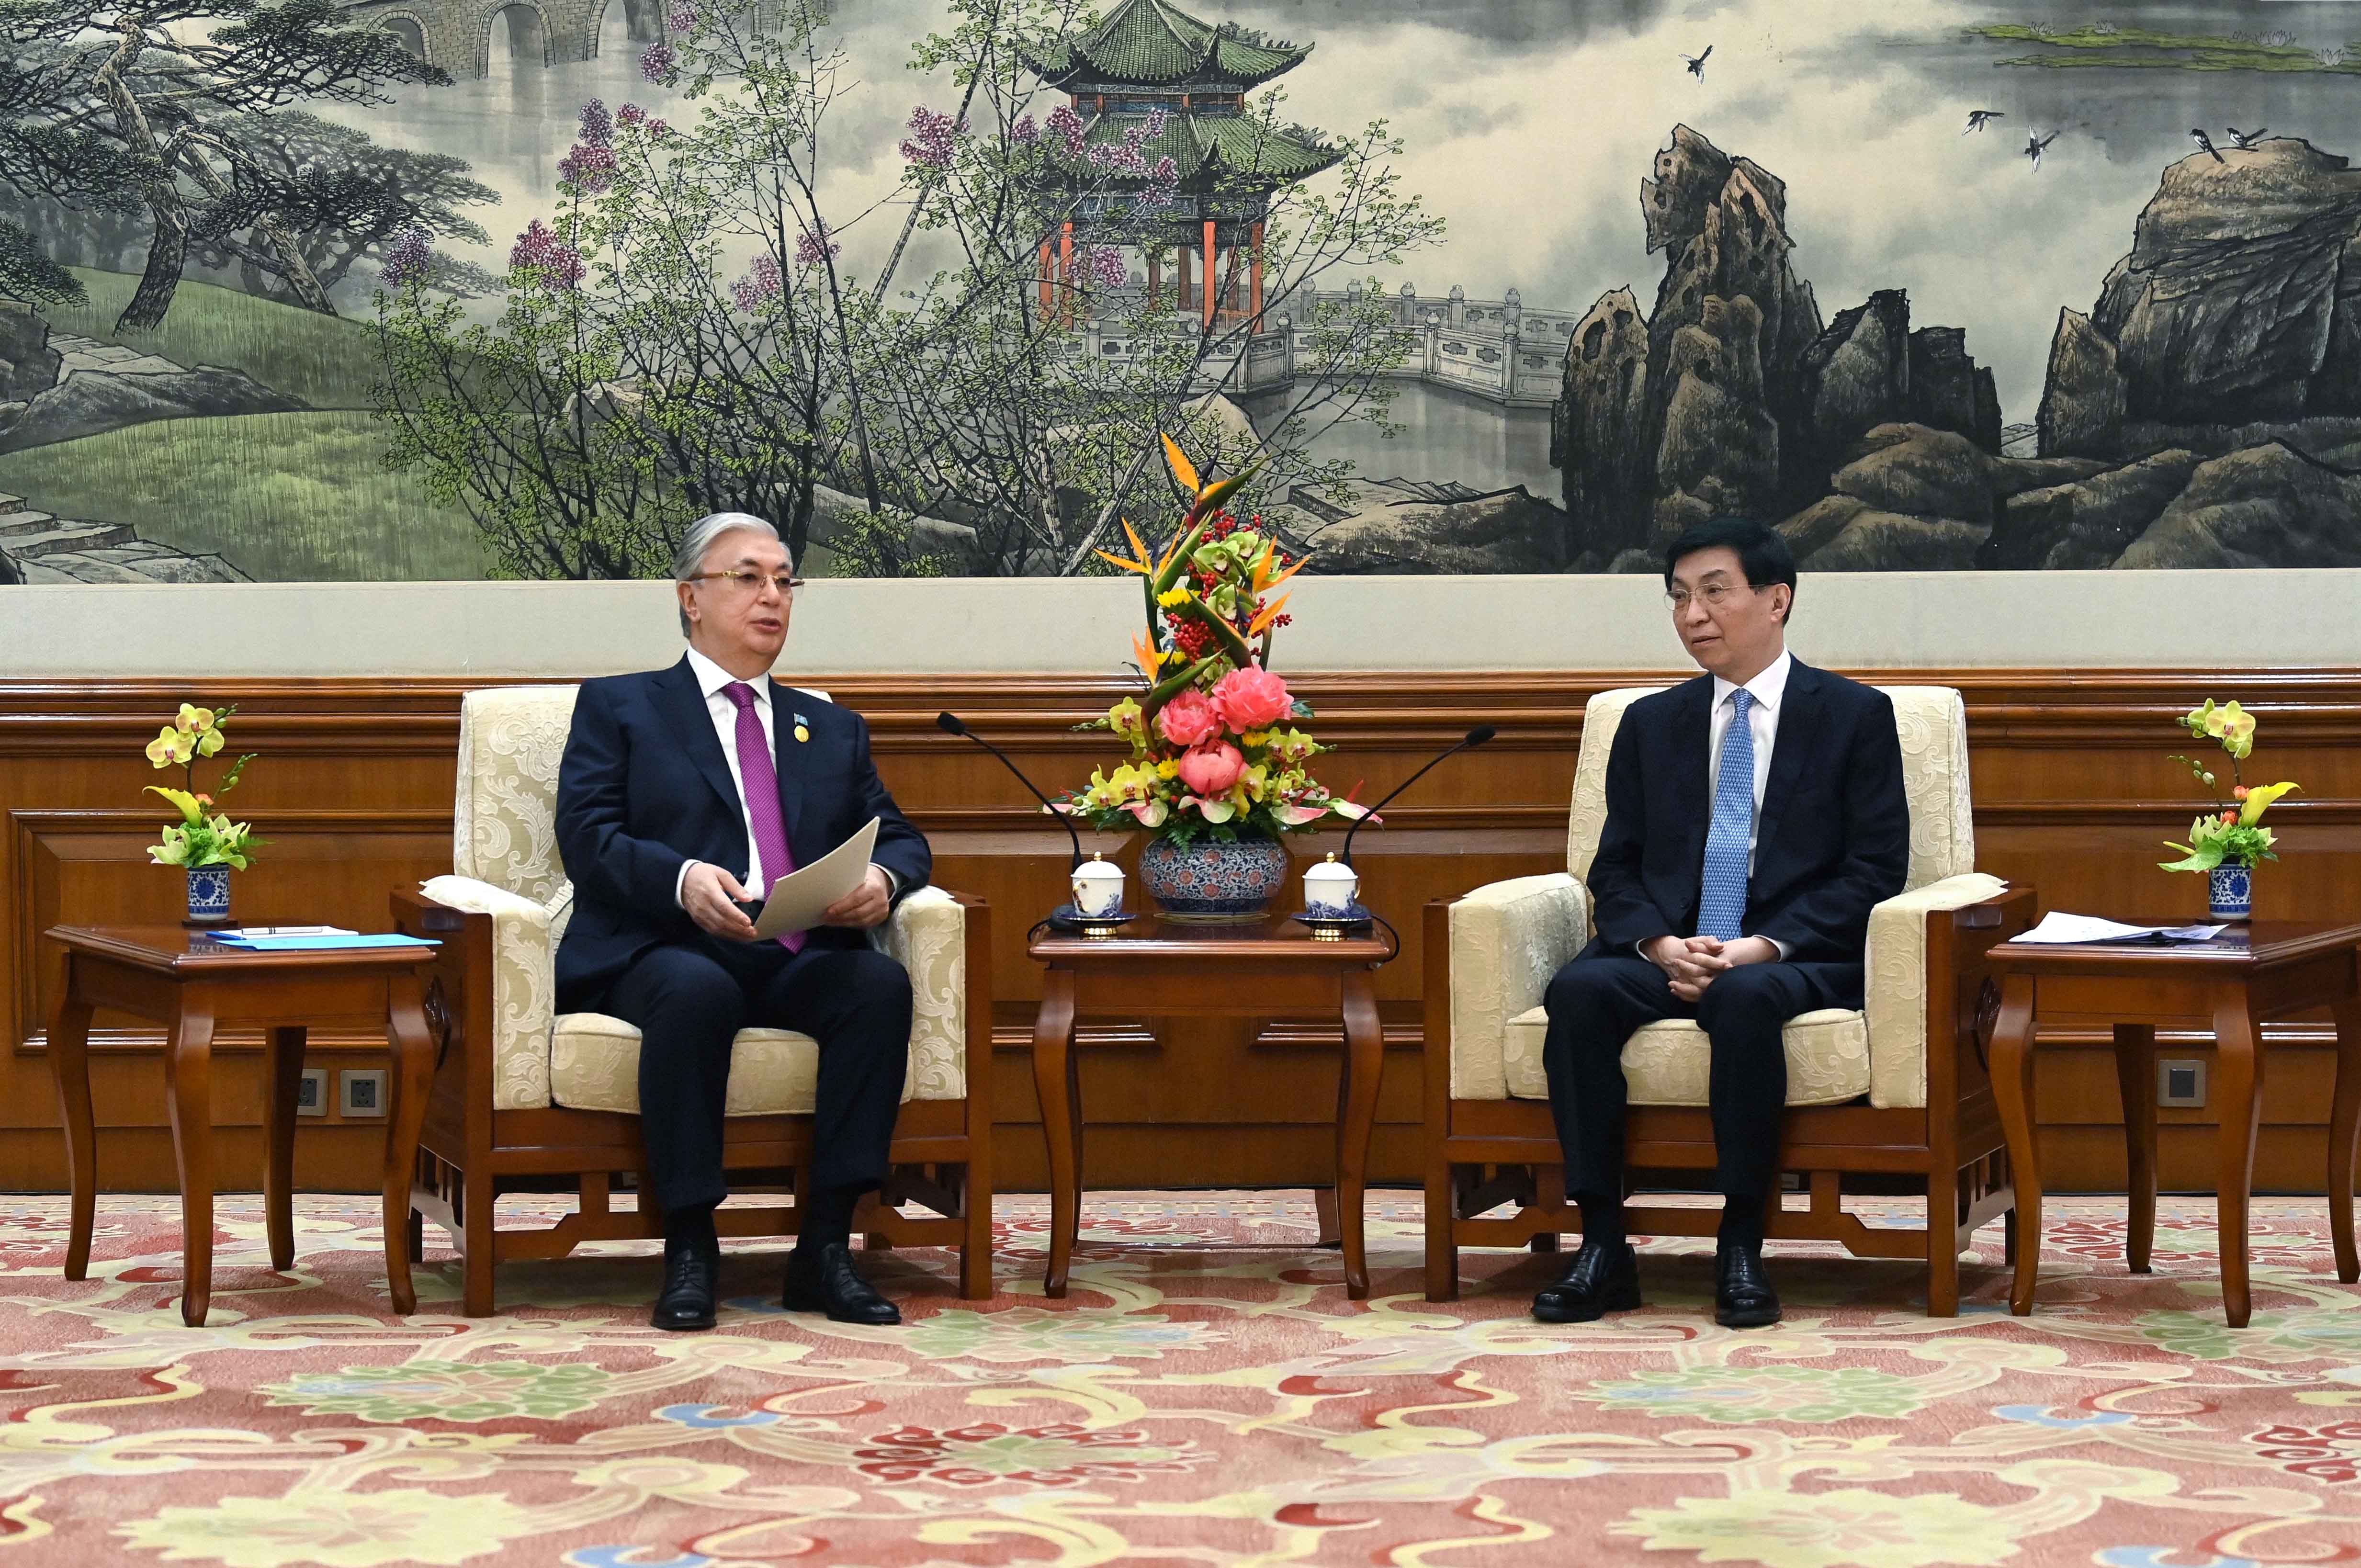 President Tokayev and Chairman Wang Huning commemorate thriving diplomatic ties between Kazakhstan and China 